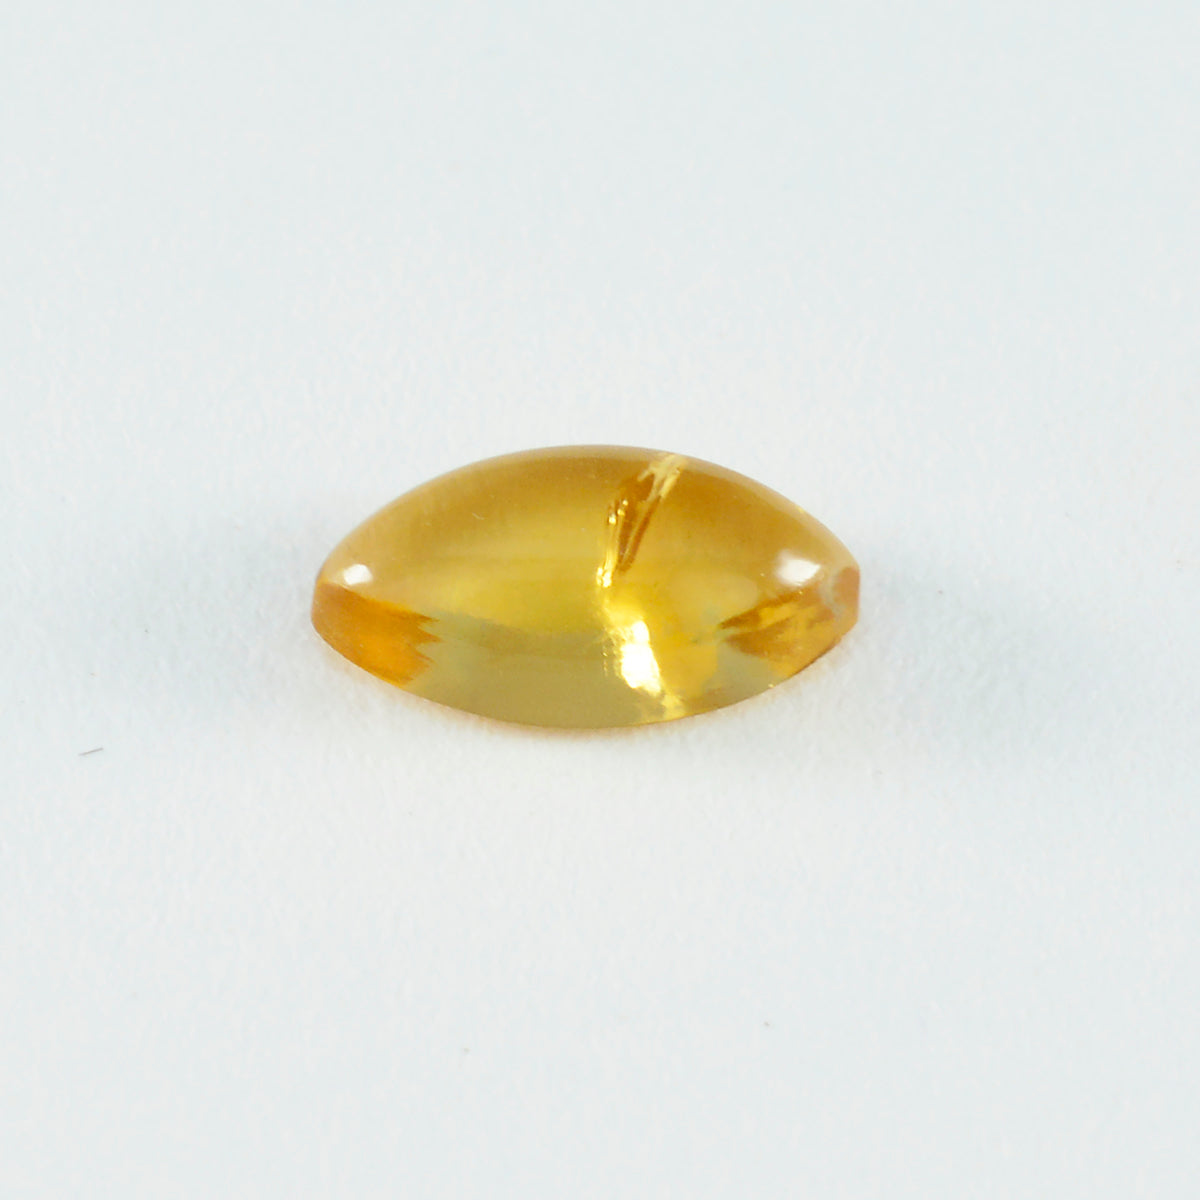 riyogems 1 шт. желтый цитрин кабошон 8x16 мм форма маркиза хорошее качество свободный драгоценный камень